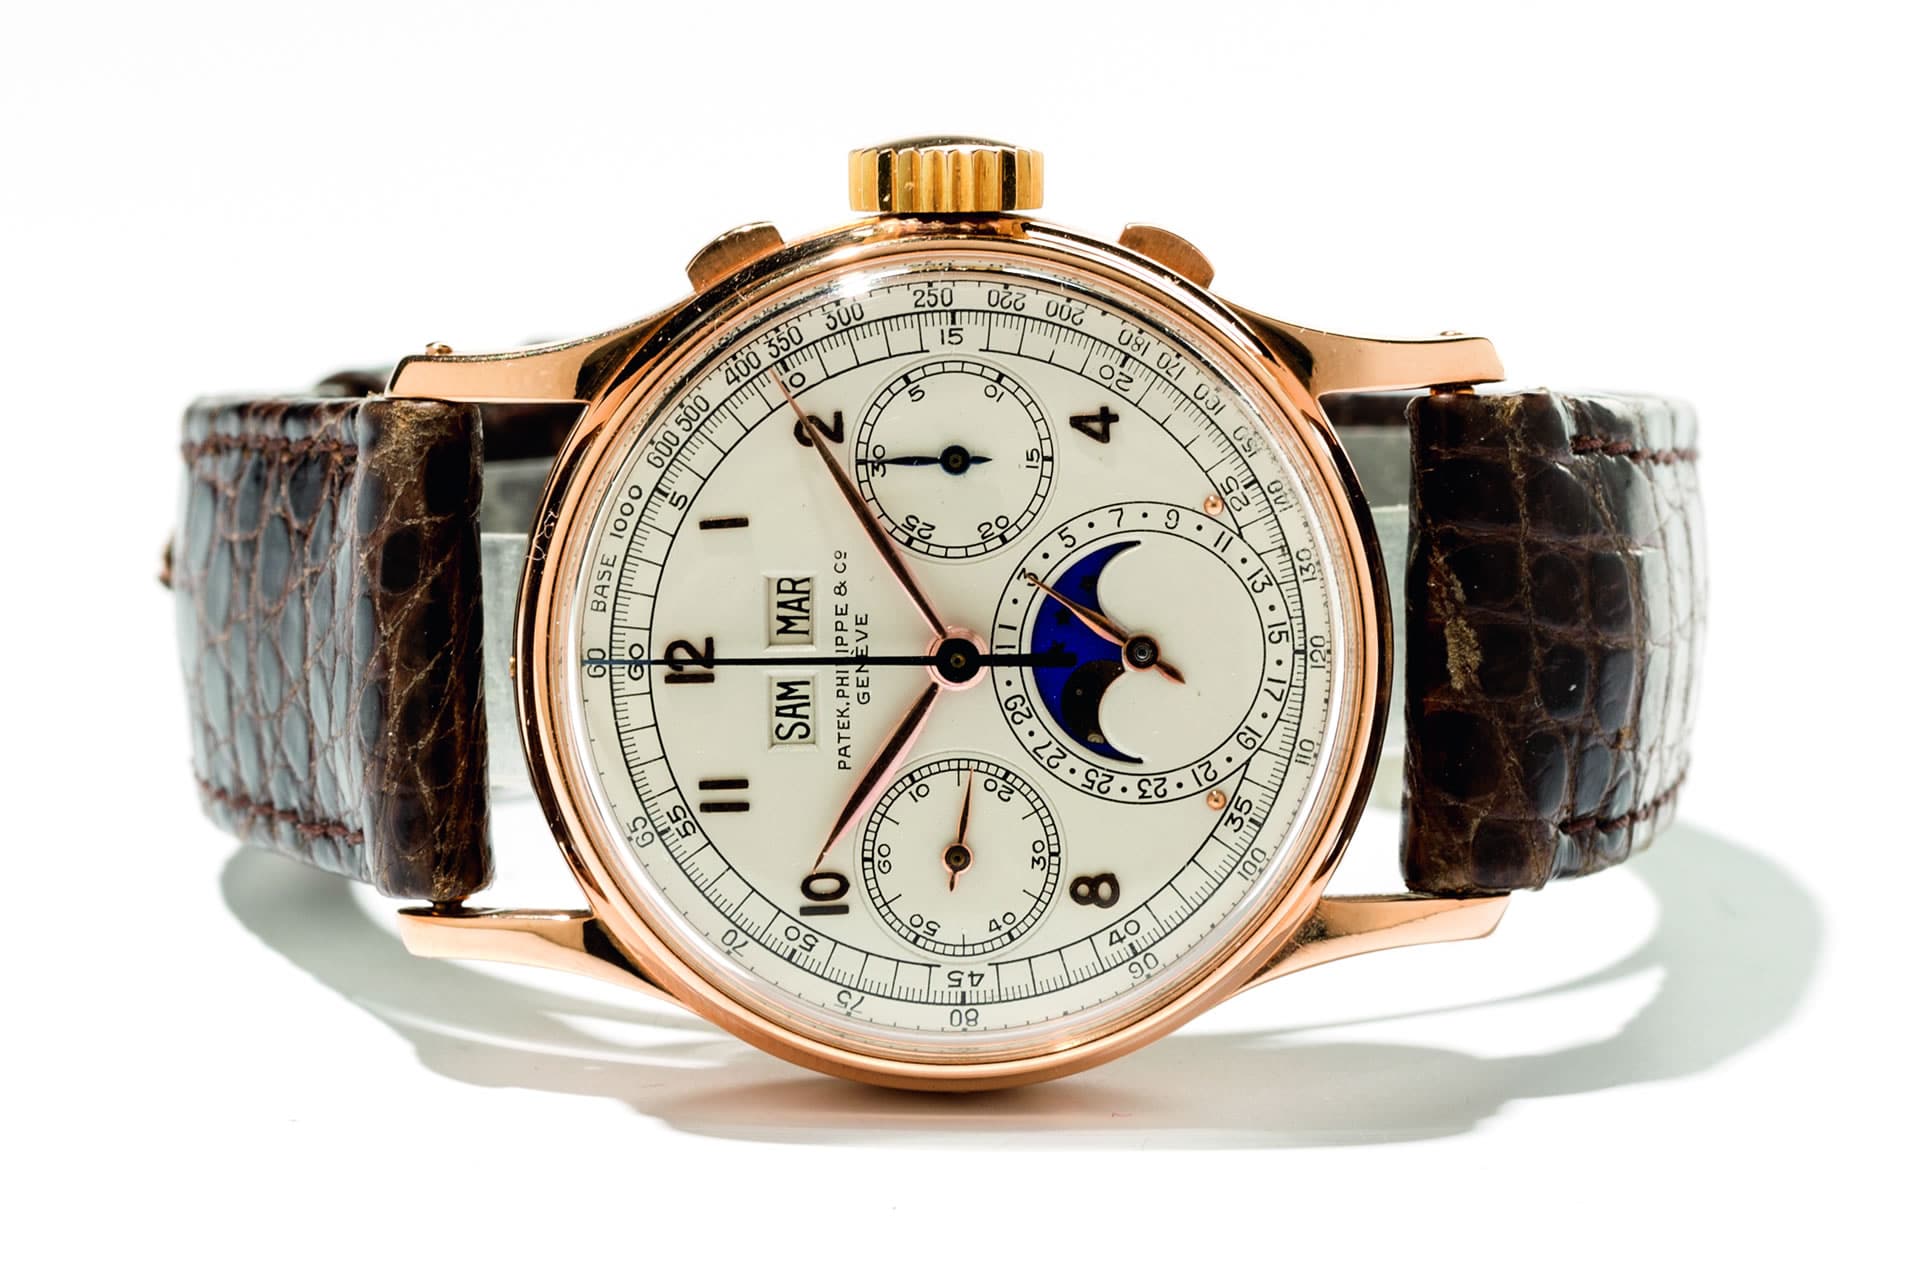 Auctionata versteigert eine Patek Philippe Uhr für 778.500 Euro